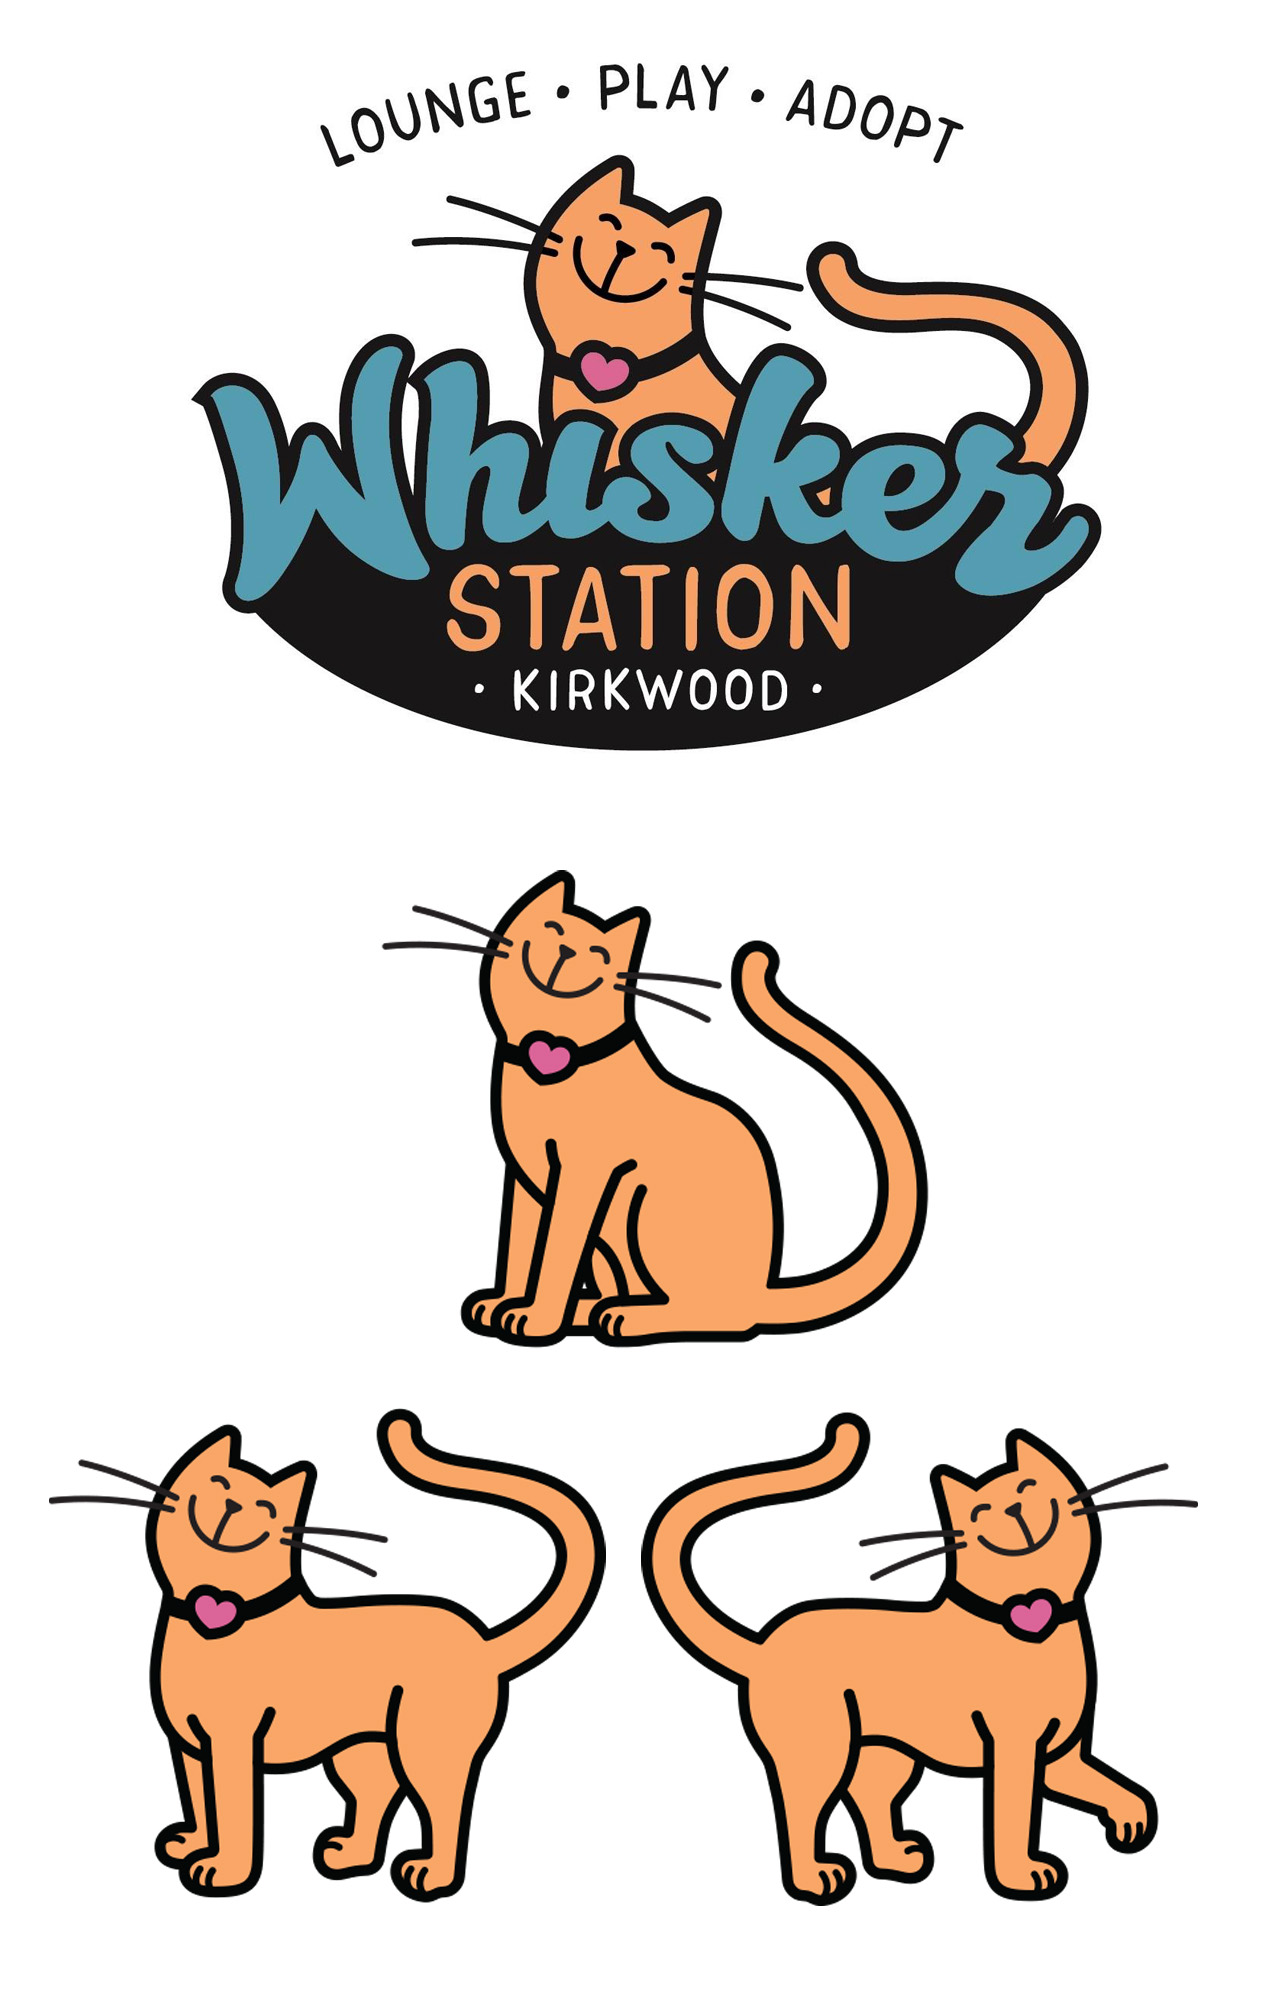 whisker station logo and mascot design